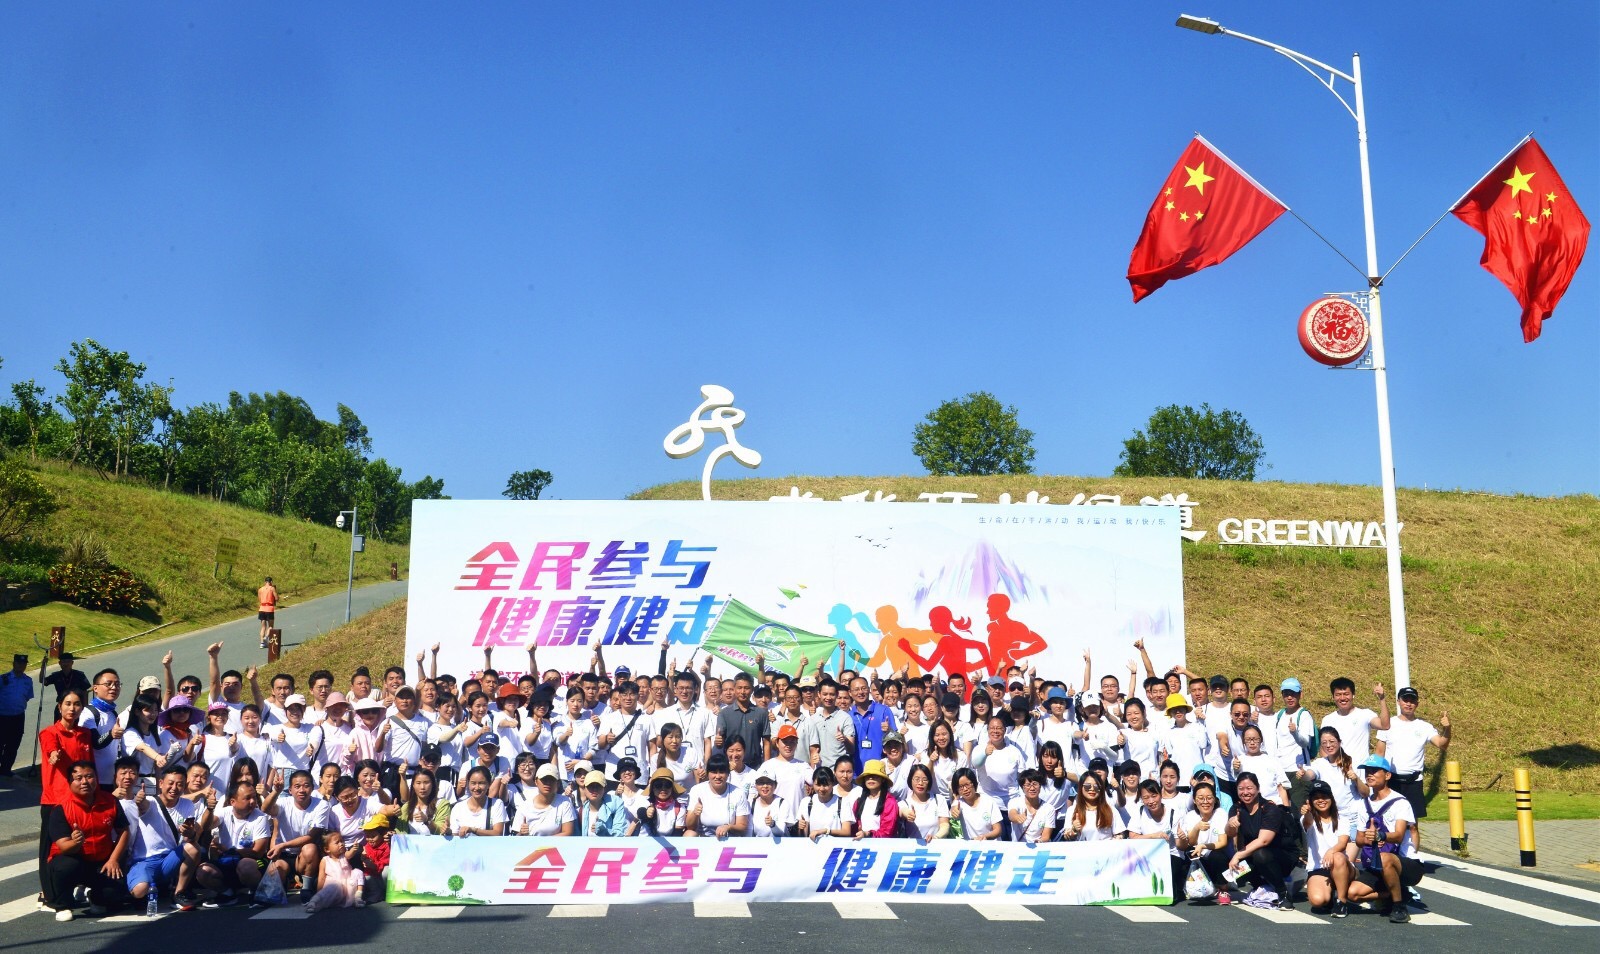 百余人参与 2019年福城环城绿道“全民参与 健康健走”活动